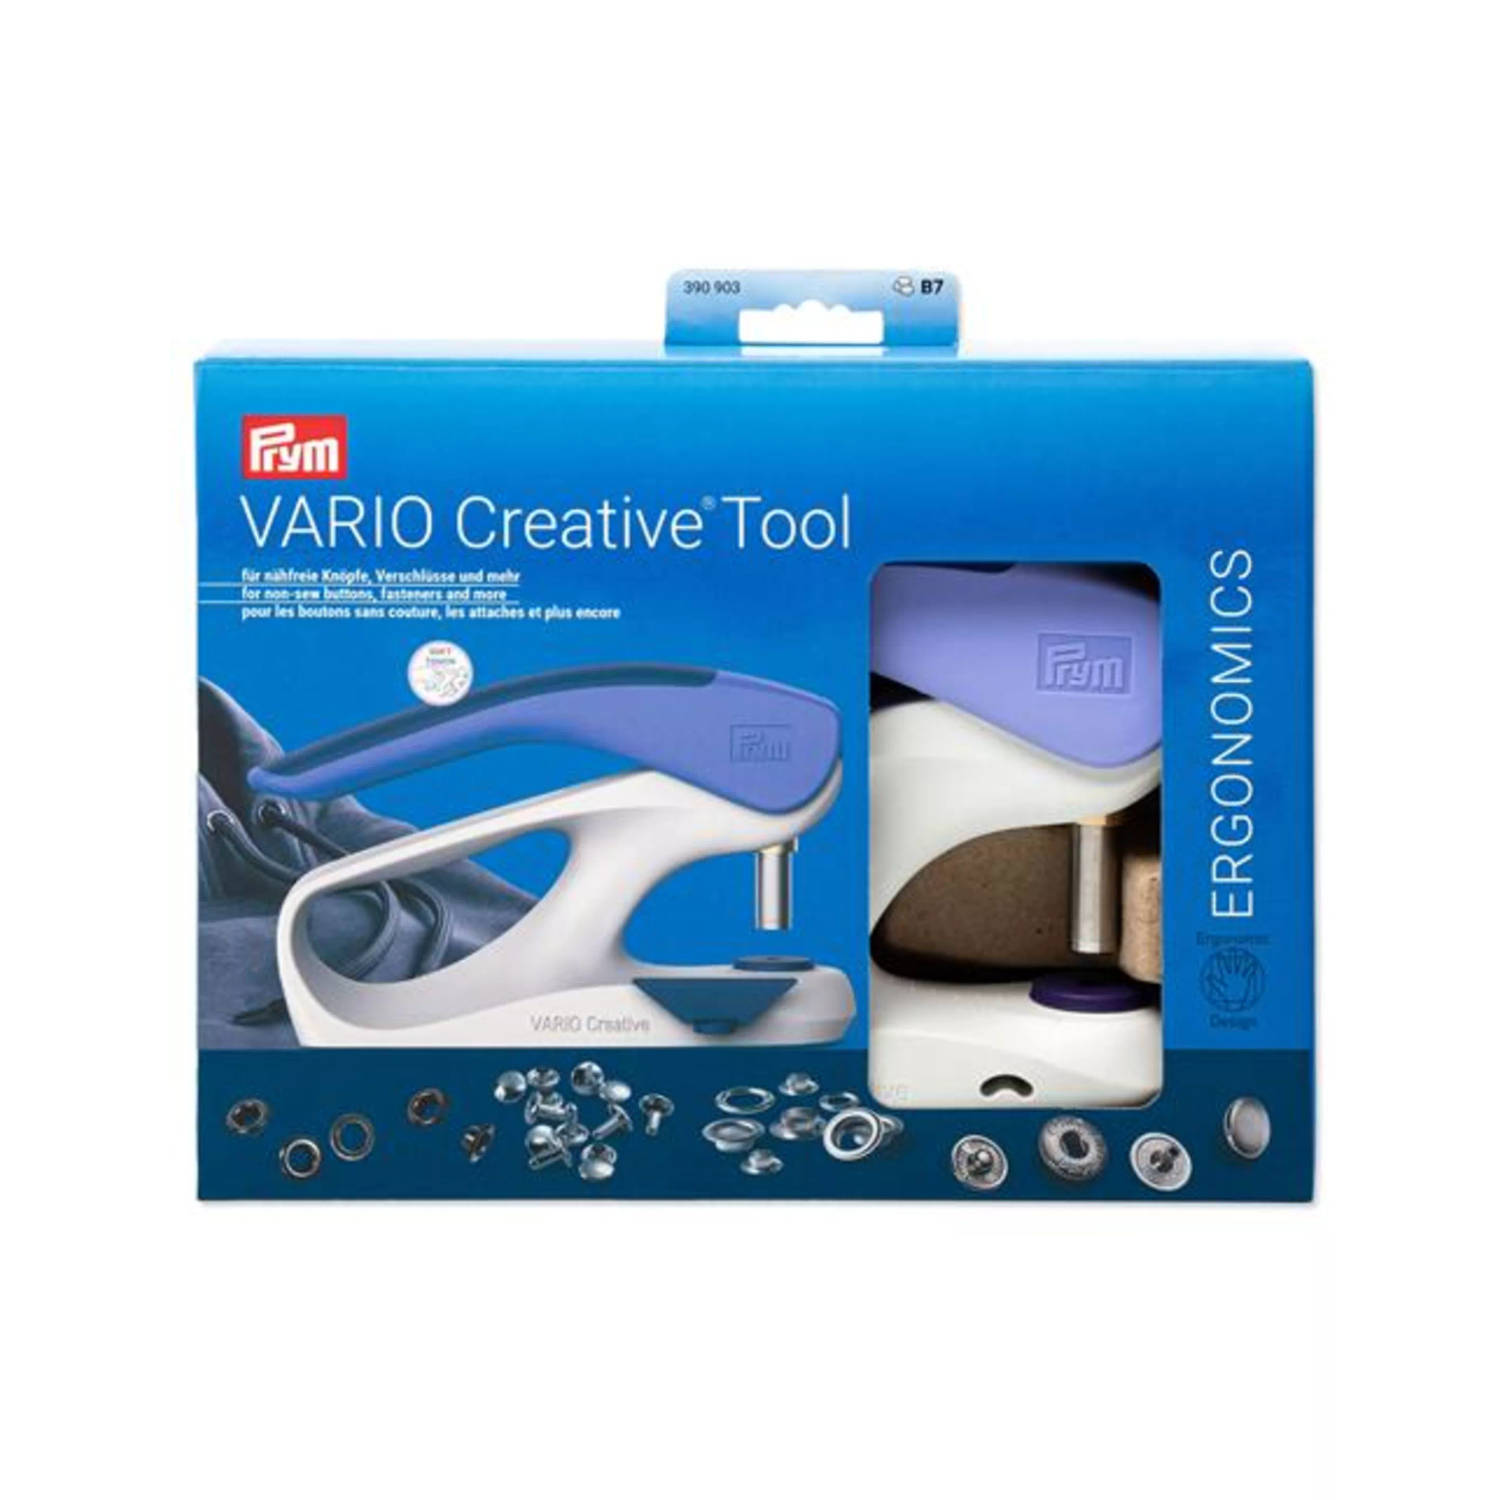 Vario Creative Tool - 390 903 - Ergonomics - Prym